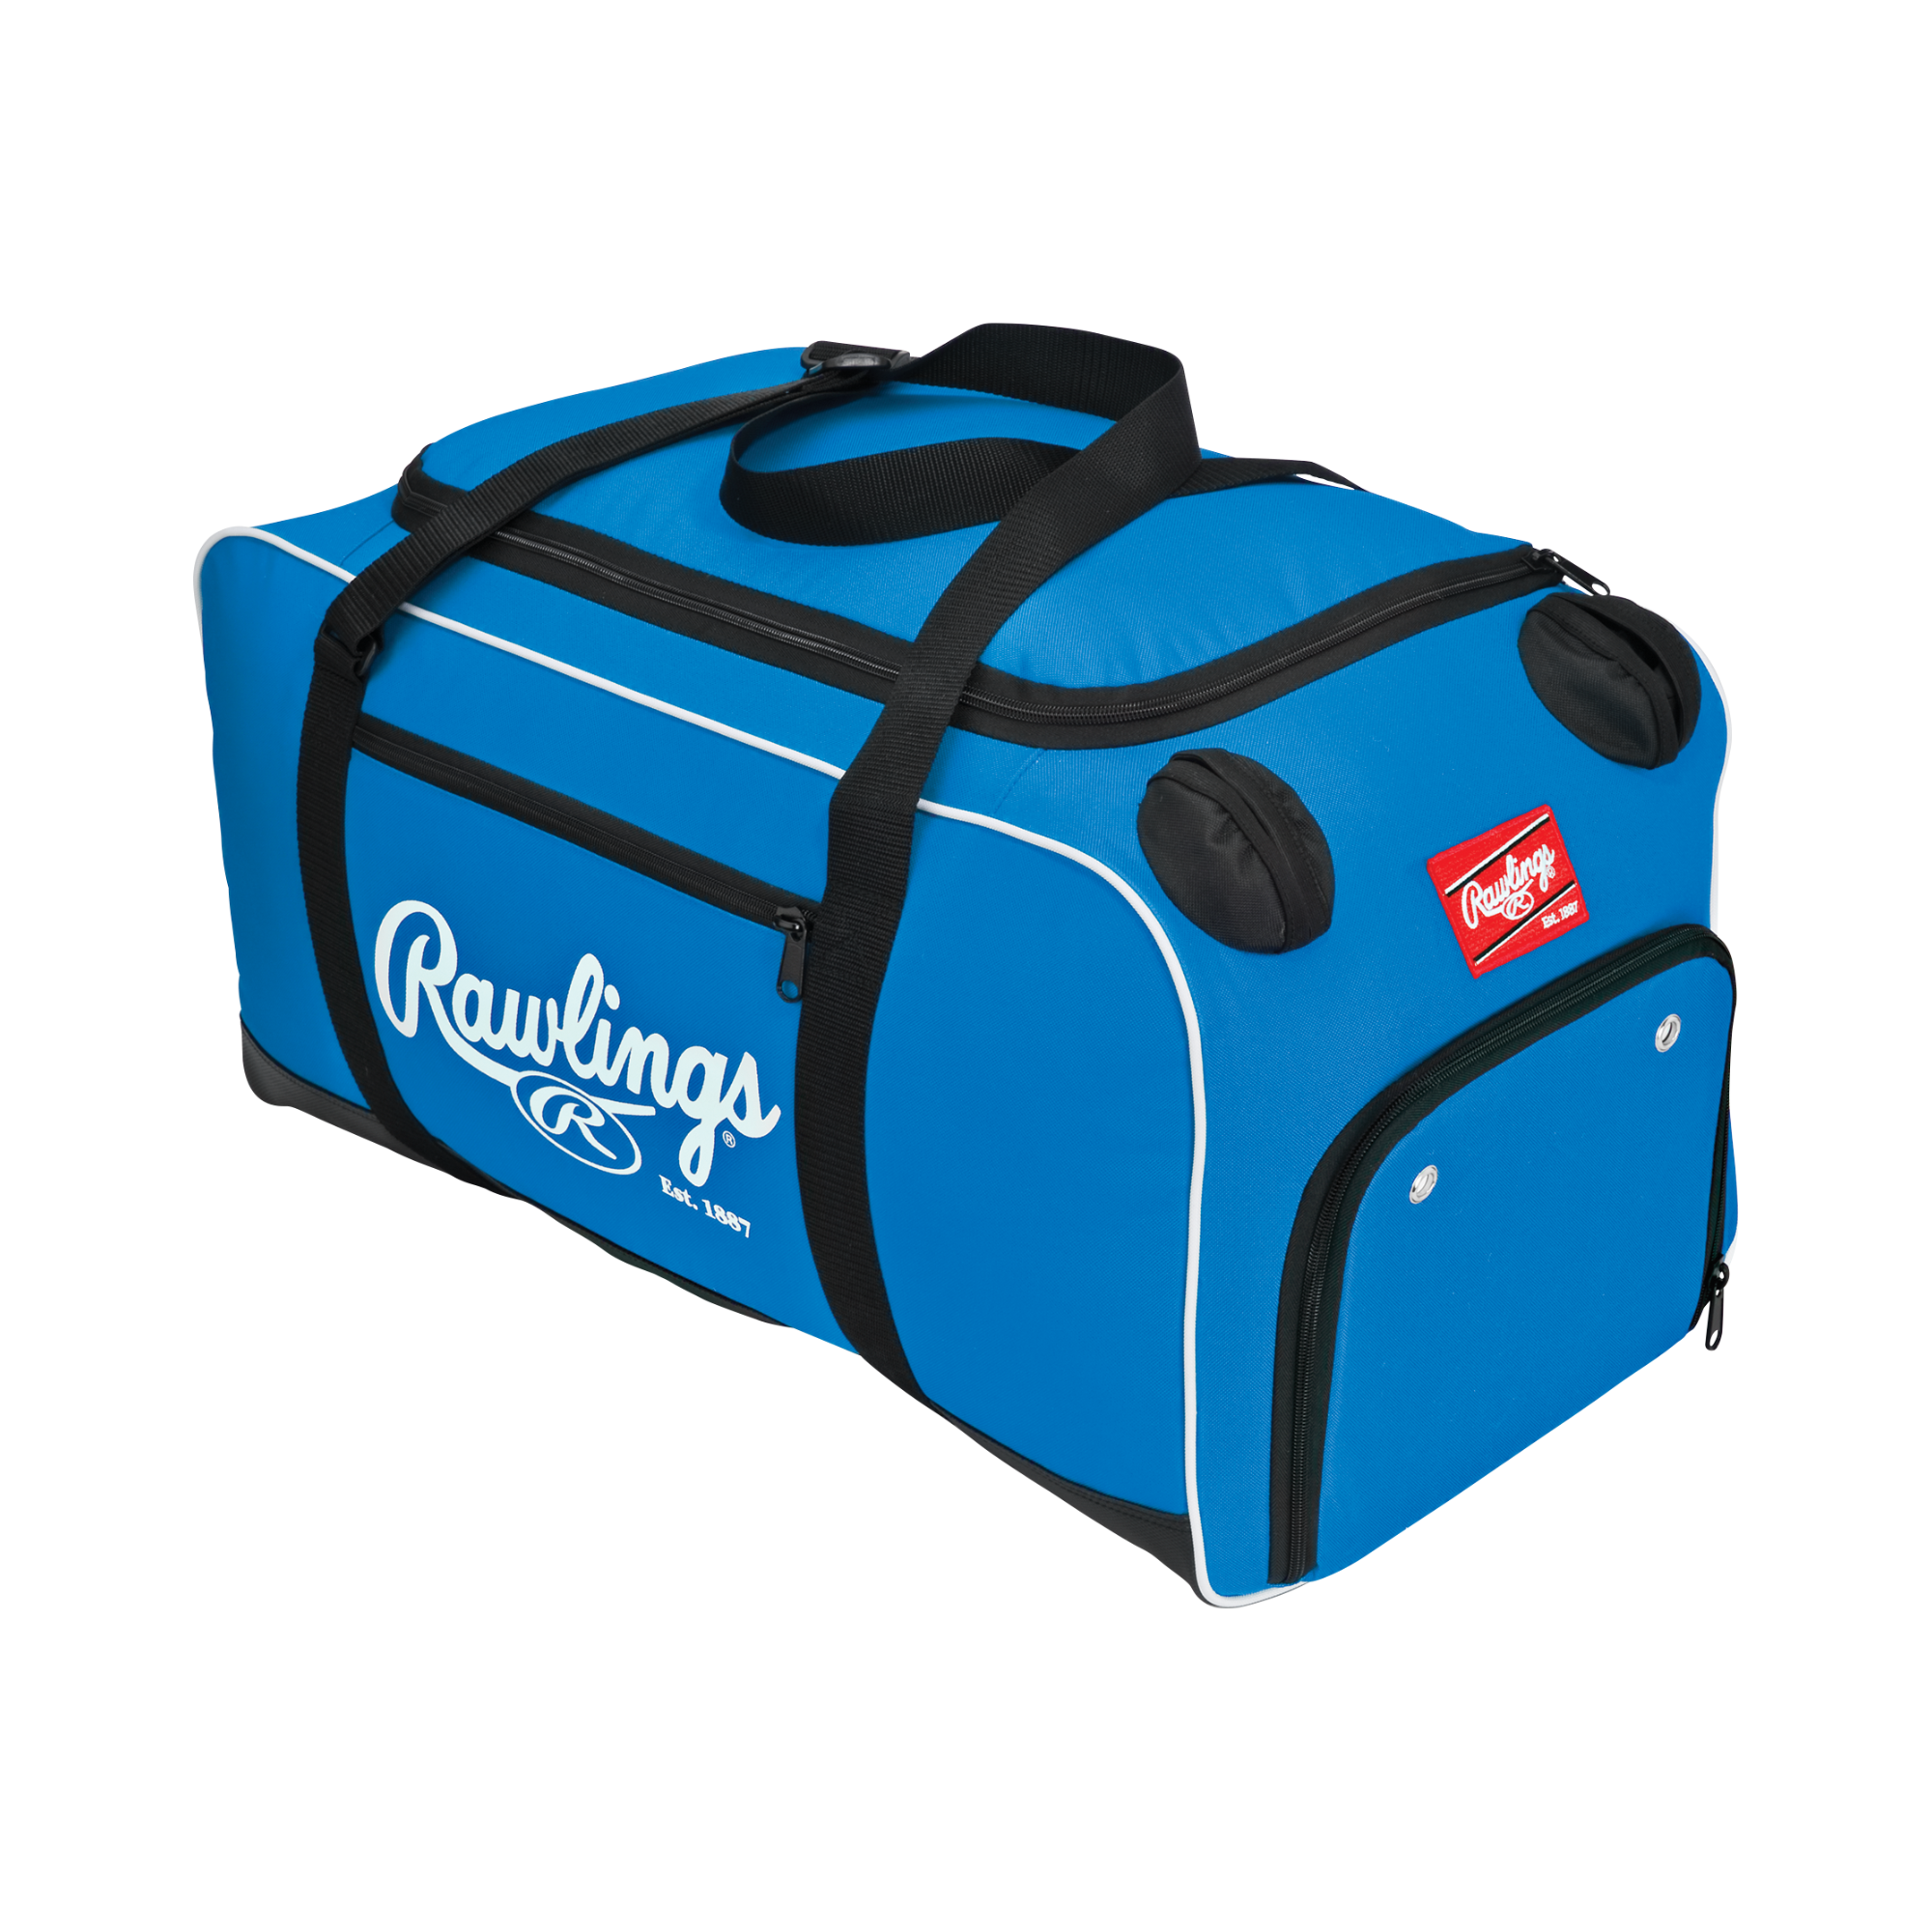 Rawlings Covert Duffle Bag - Royal